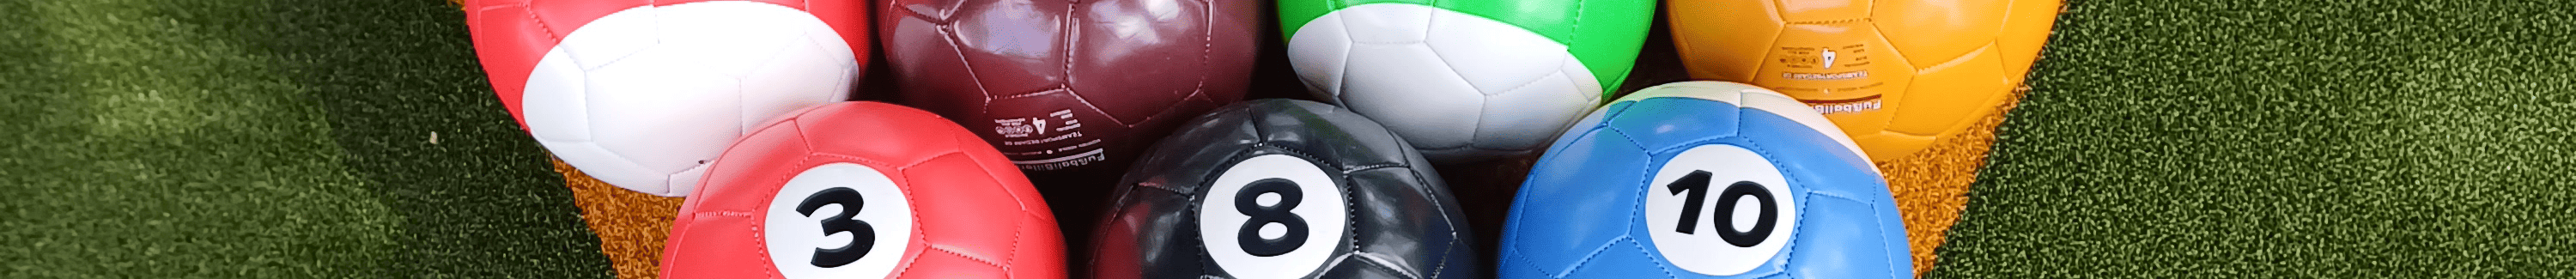 Fußballbillard - Trendsportart Fussball Billard